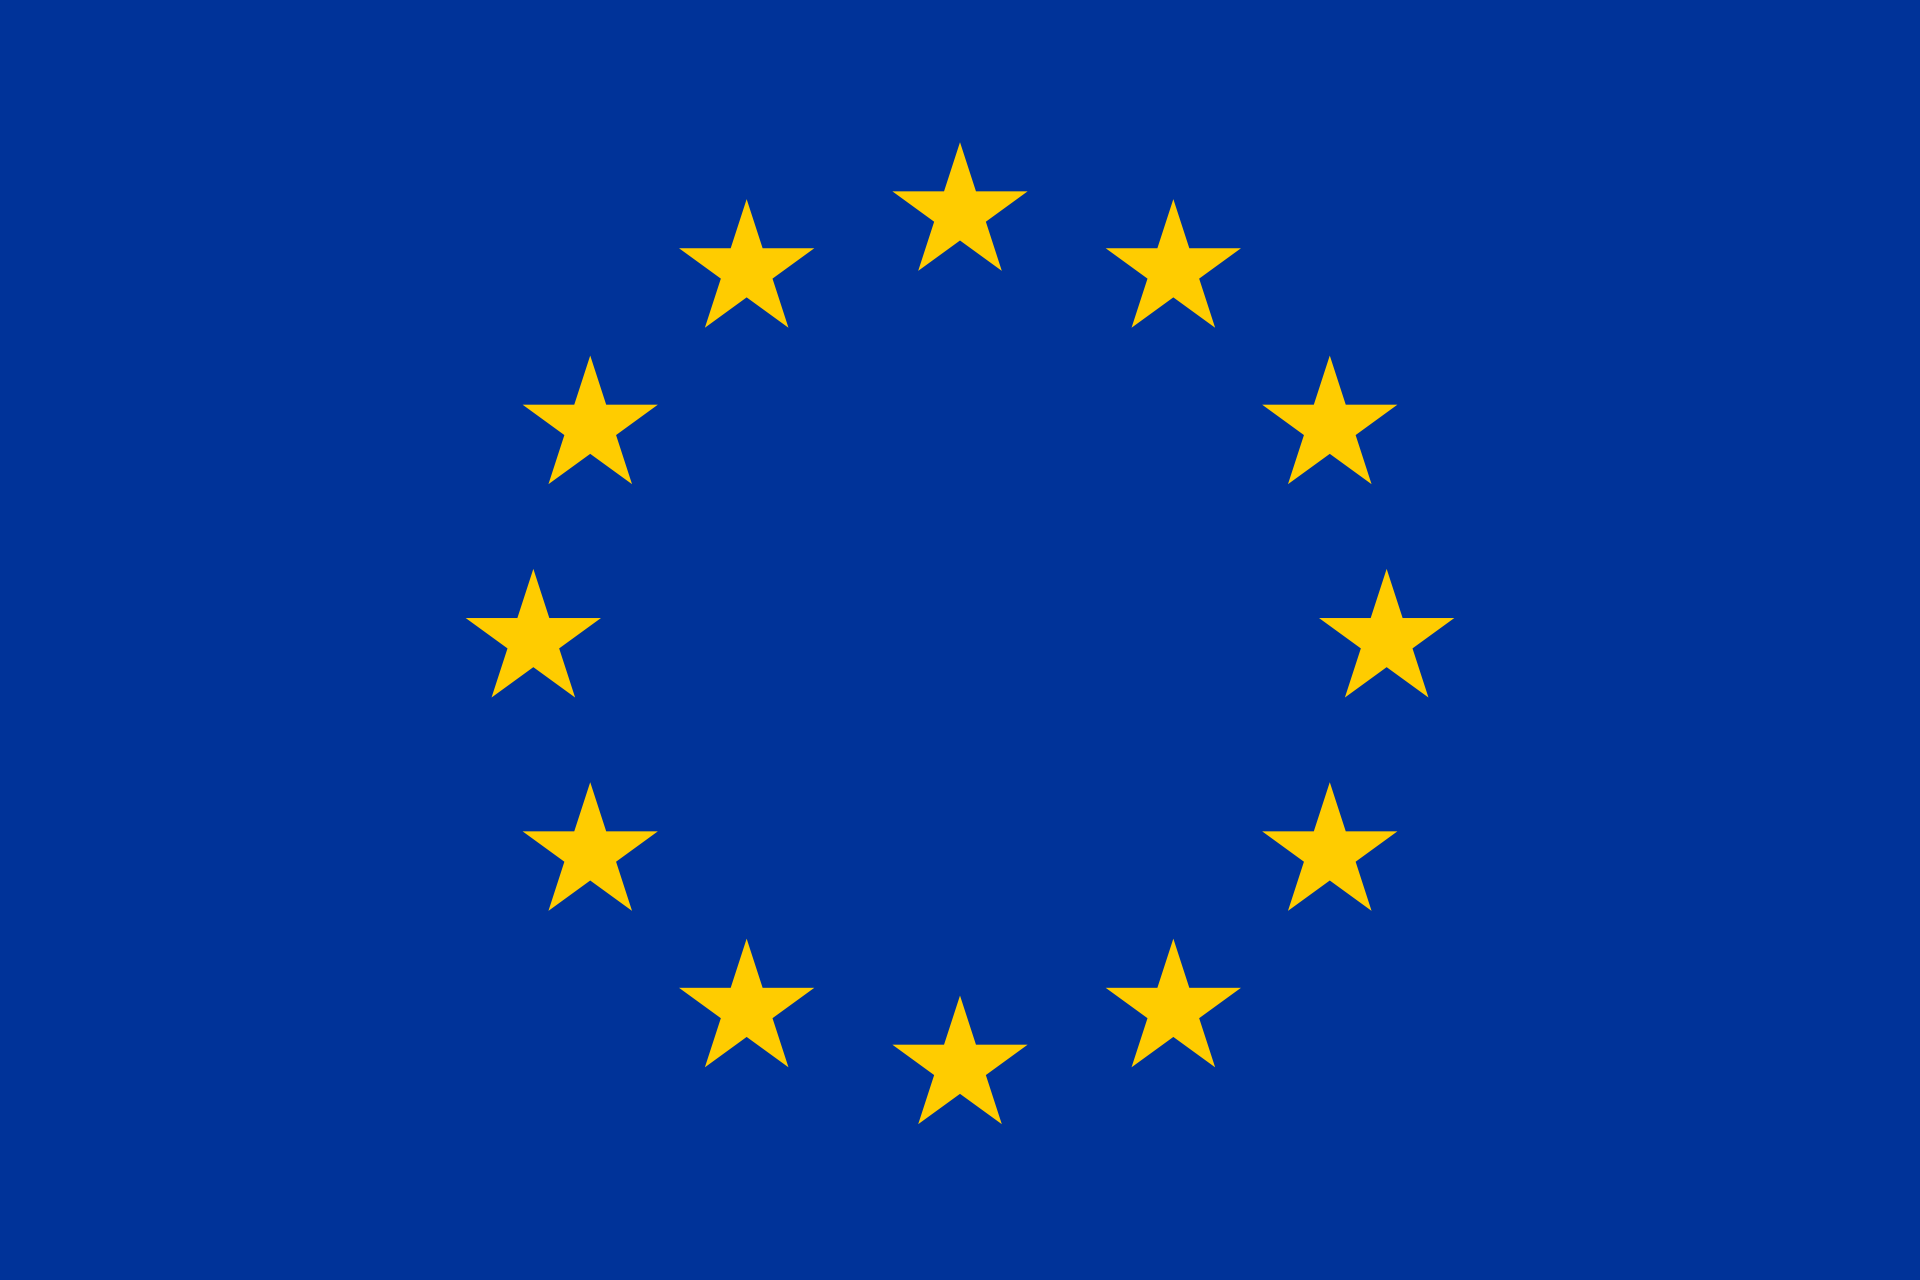 factasia.org - EU flag